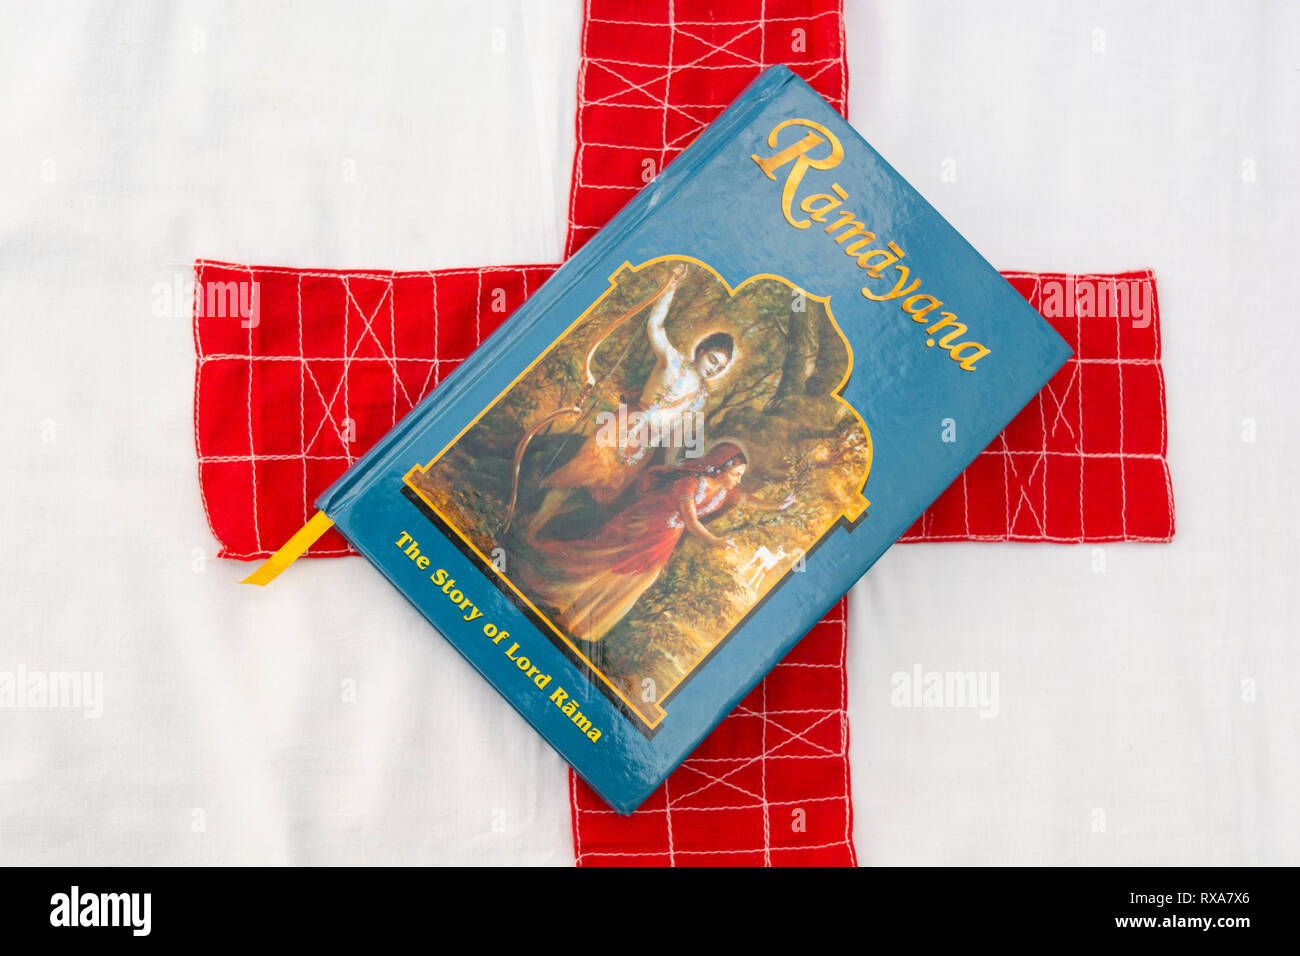 Maski,Karnataka,India - March 07,2019 : The Epic Hindu Mythology Ramayana book on isolated background with red cloth Stock Photo